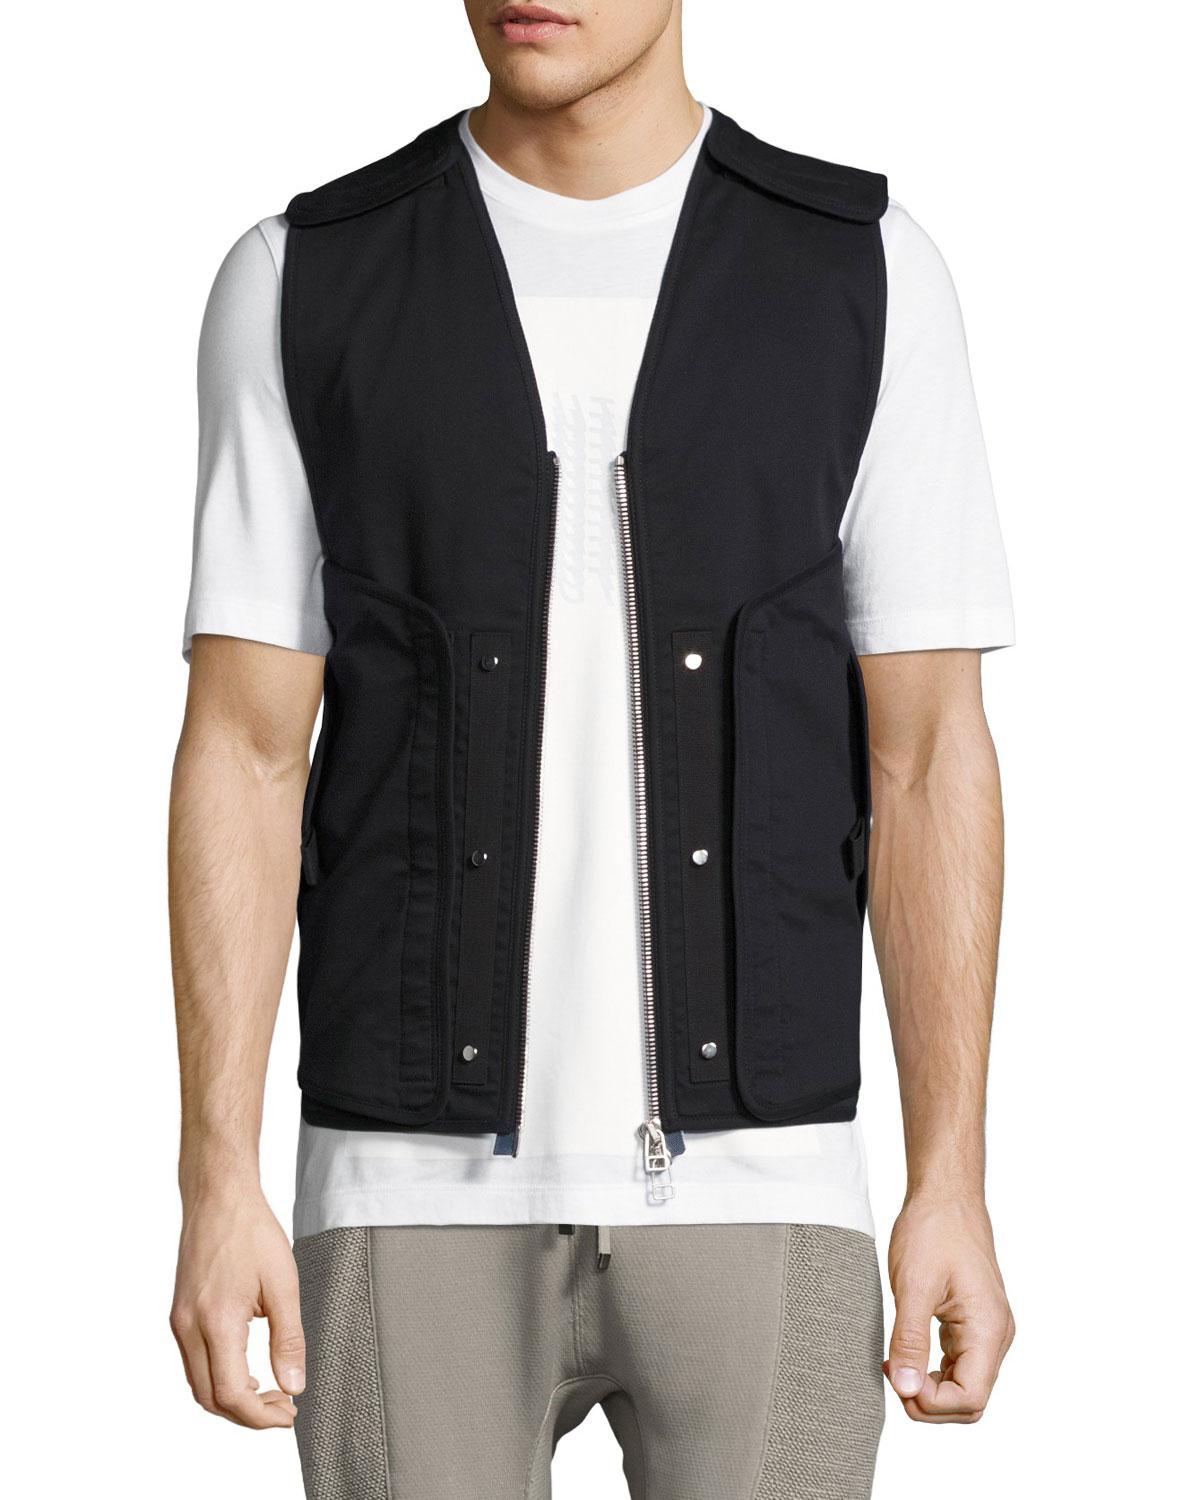 Lyst - Helmut Lang Zip-front Utility Vest in Black for Men - Save 34%